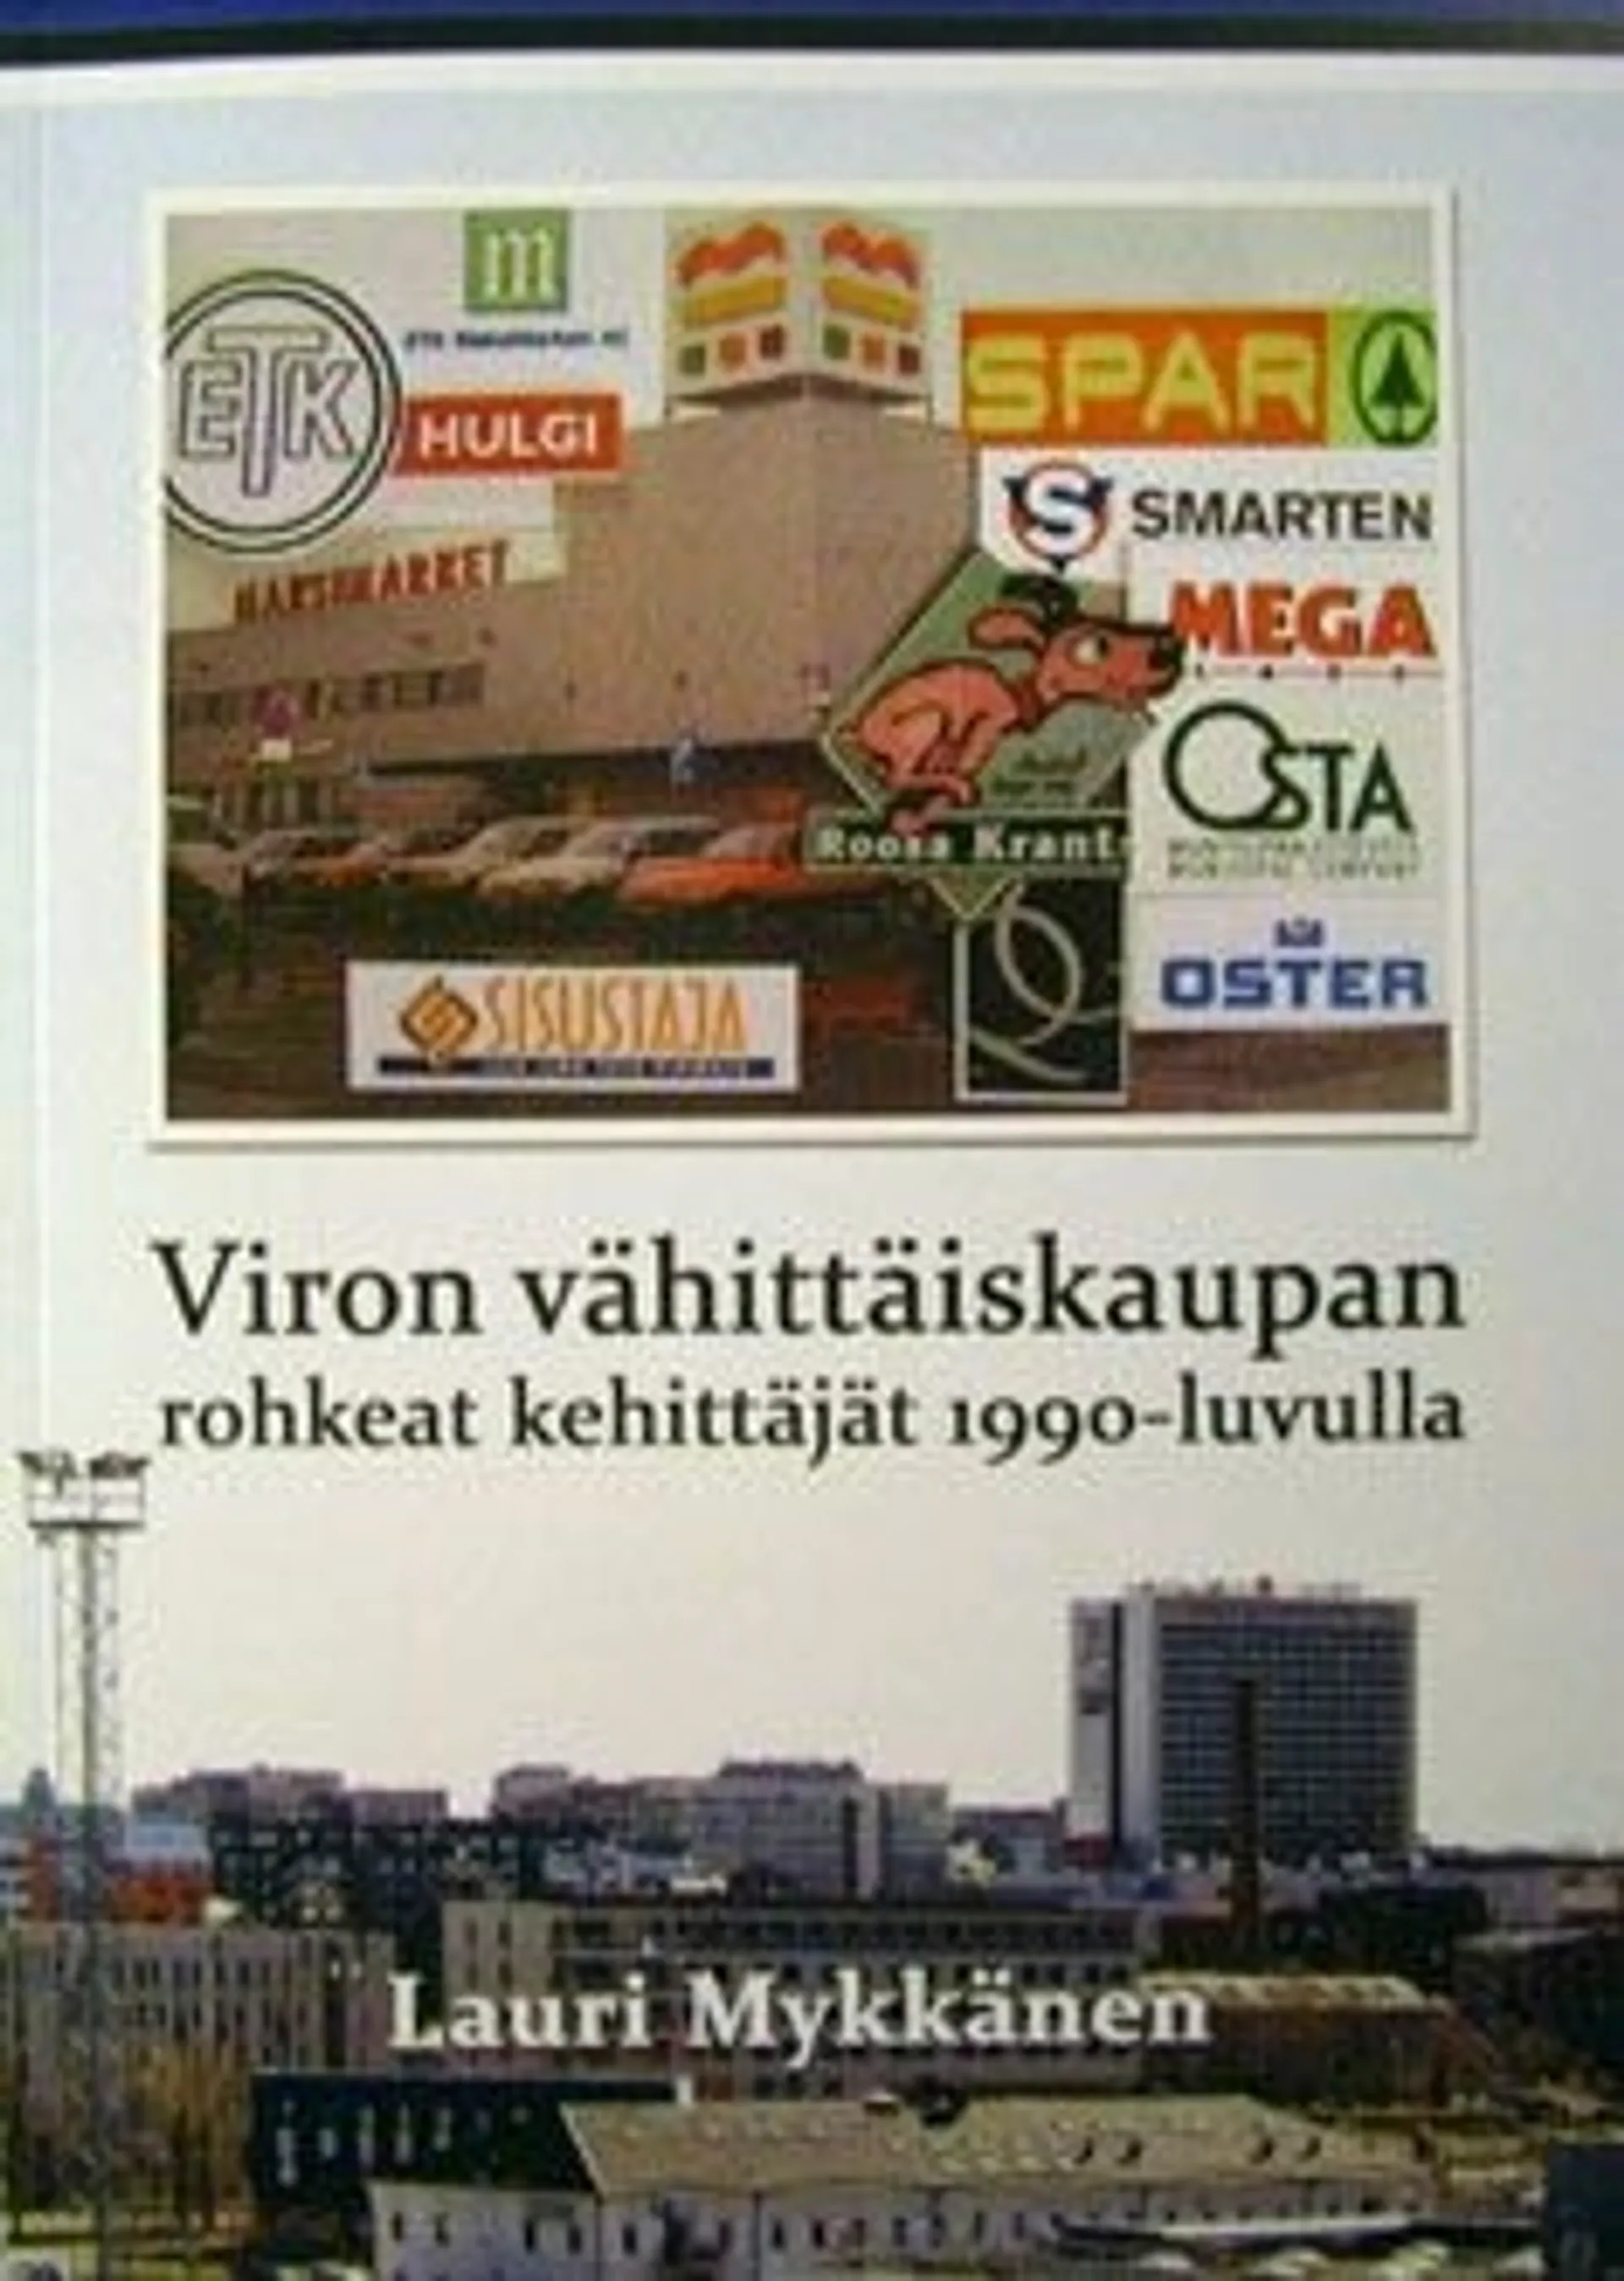 Mykkänen, Viron vähittäiskaupan rohkeat kehittäjät 1990-luvulla